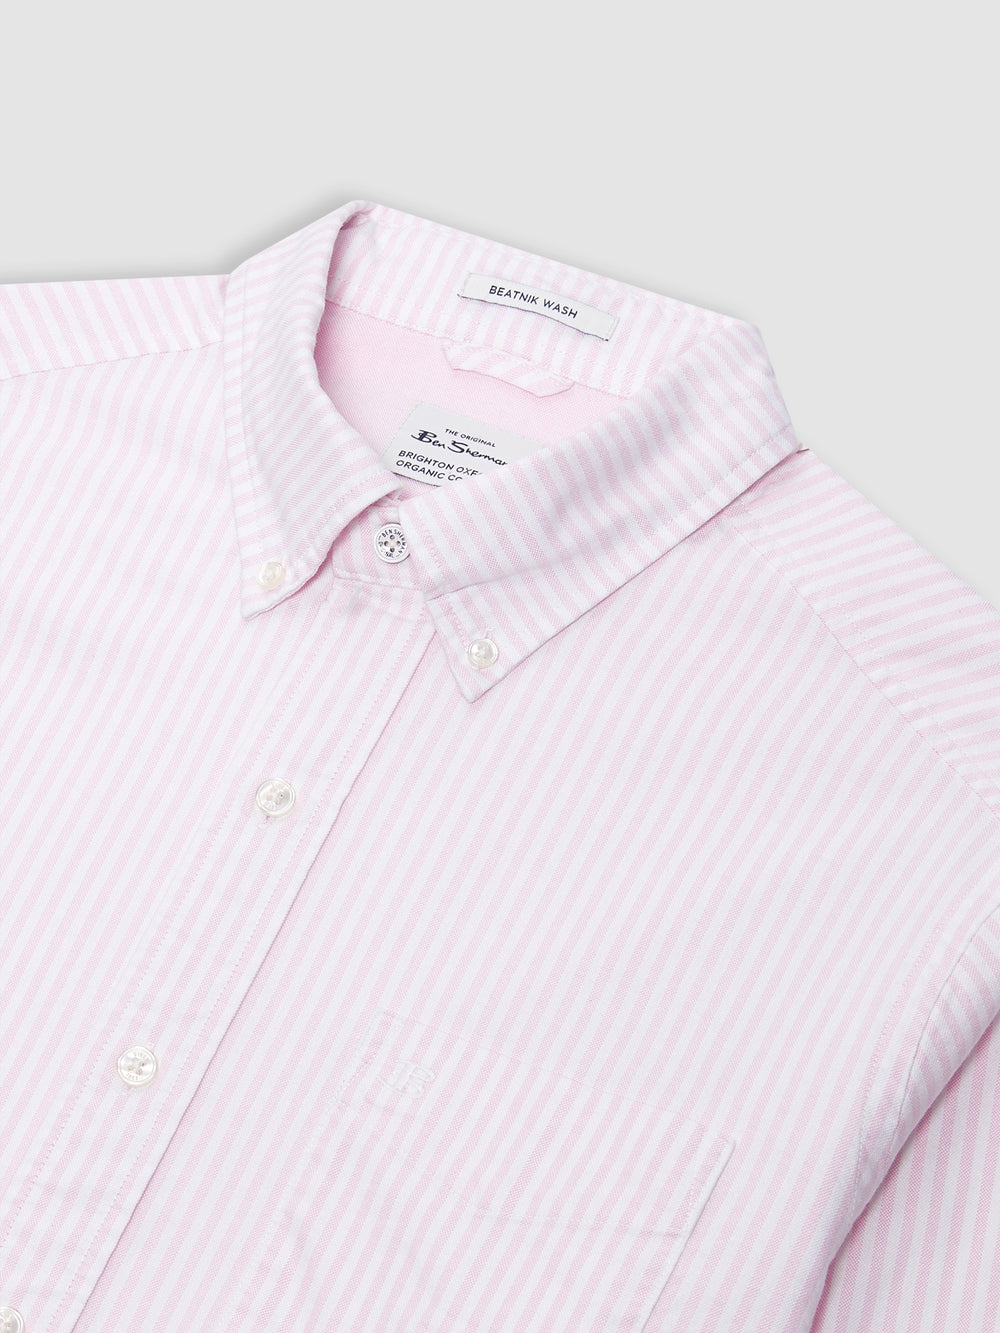 Brighton Oxford Shirt - Pink Bengal Stripe